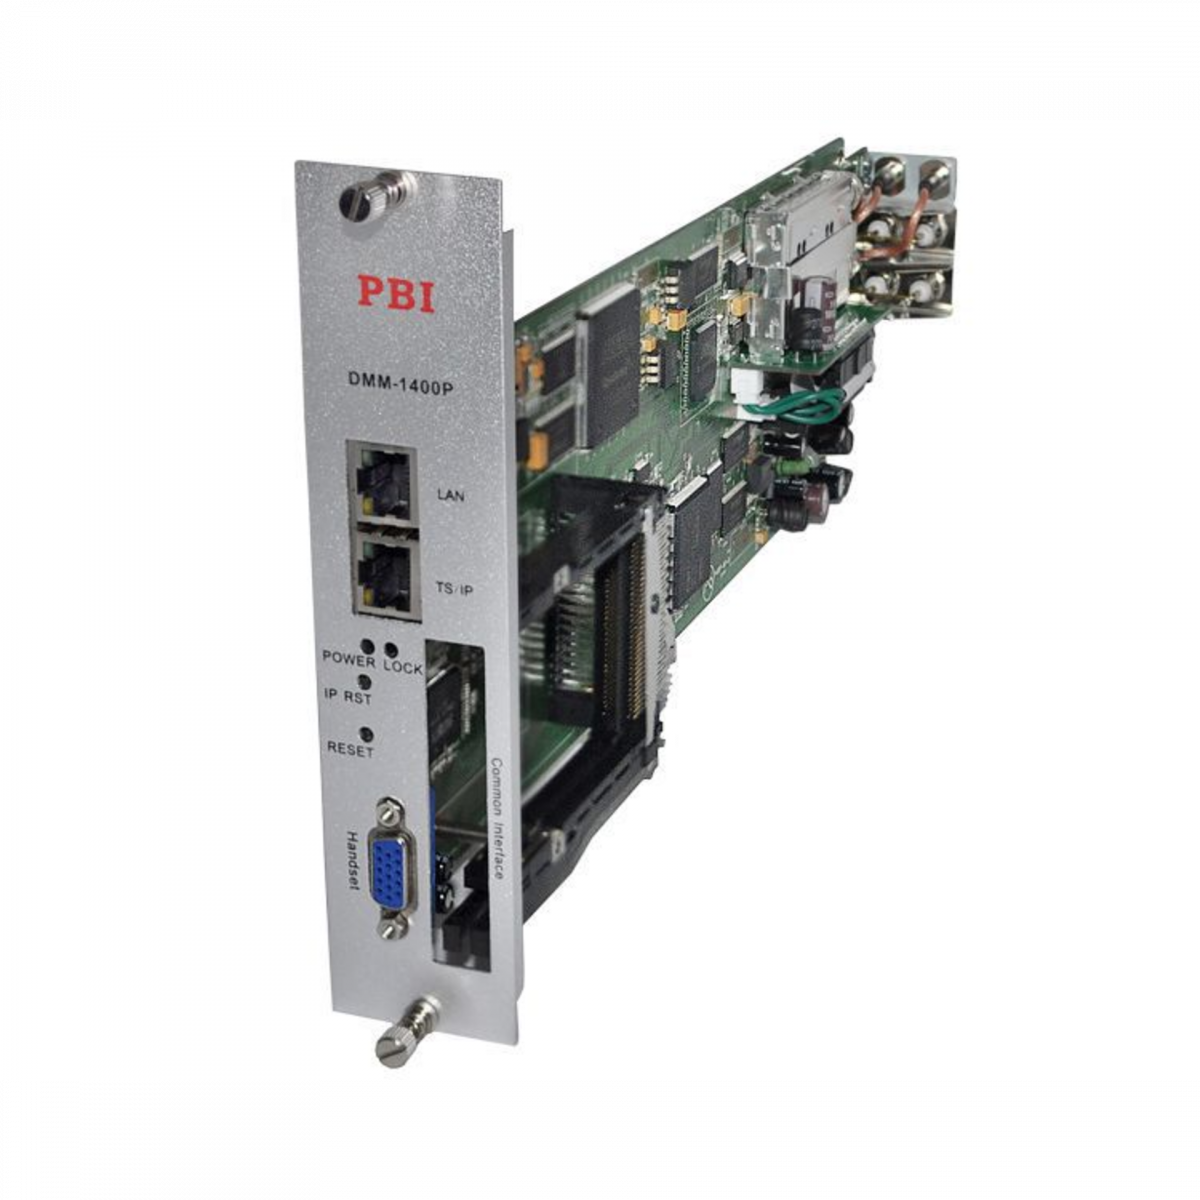 Модуль профессионального IRD приемника PBI DMM-1500P-30S2 для цифровой ГС PBI DMM-1000 (некондиция)